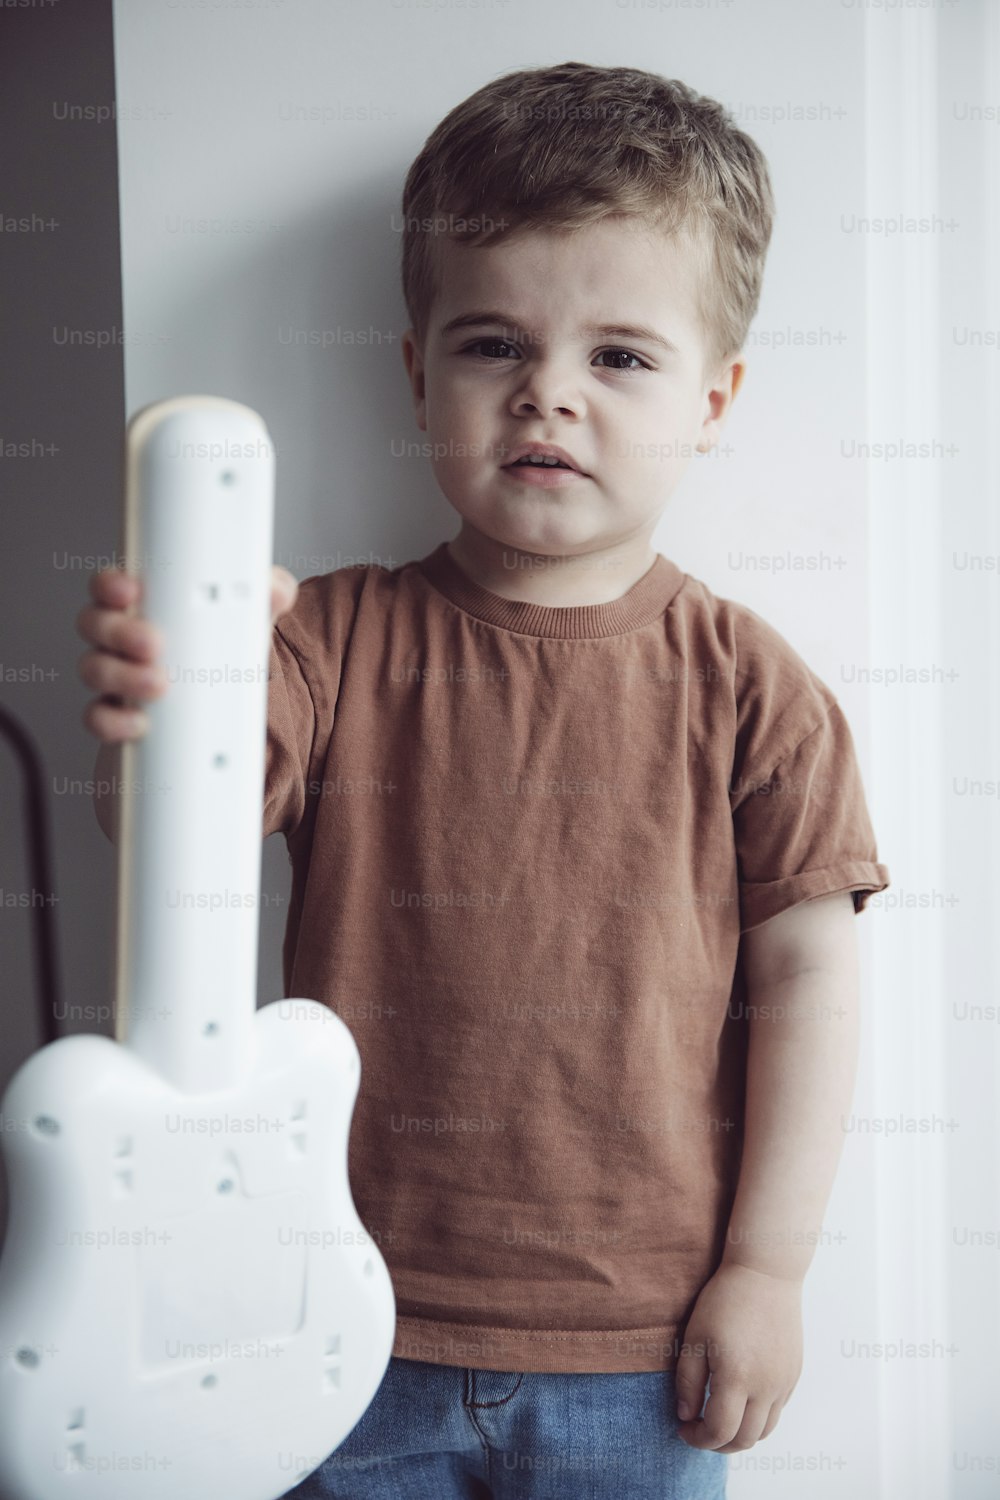 Un niño sosteniendo un objeto blanco en forma de guitarra